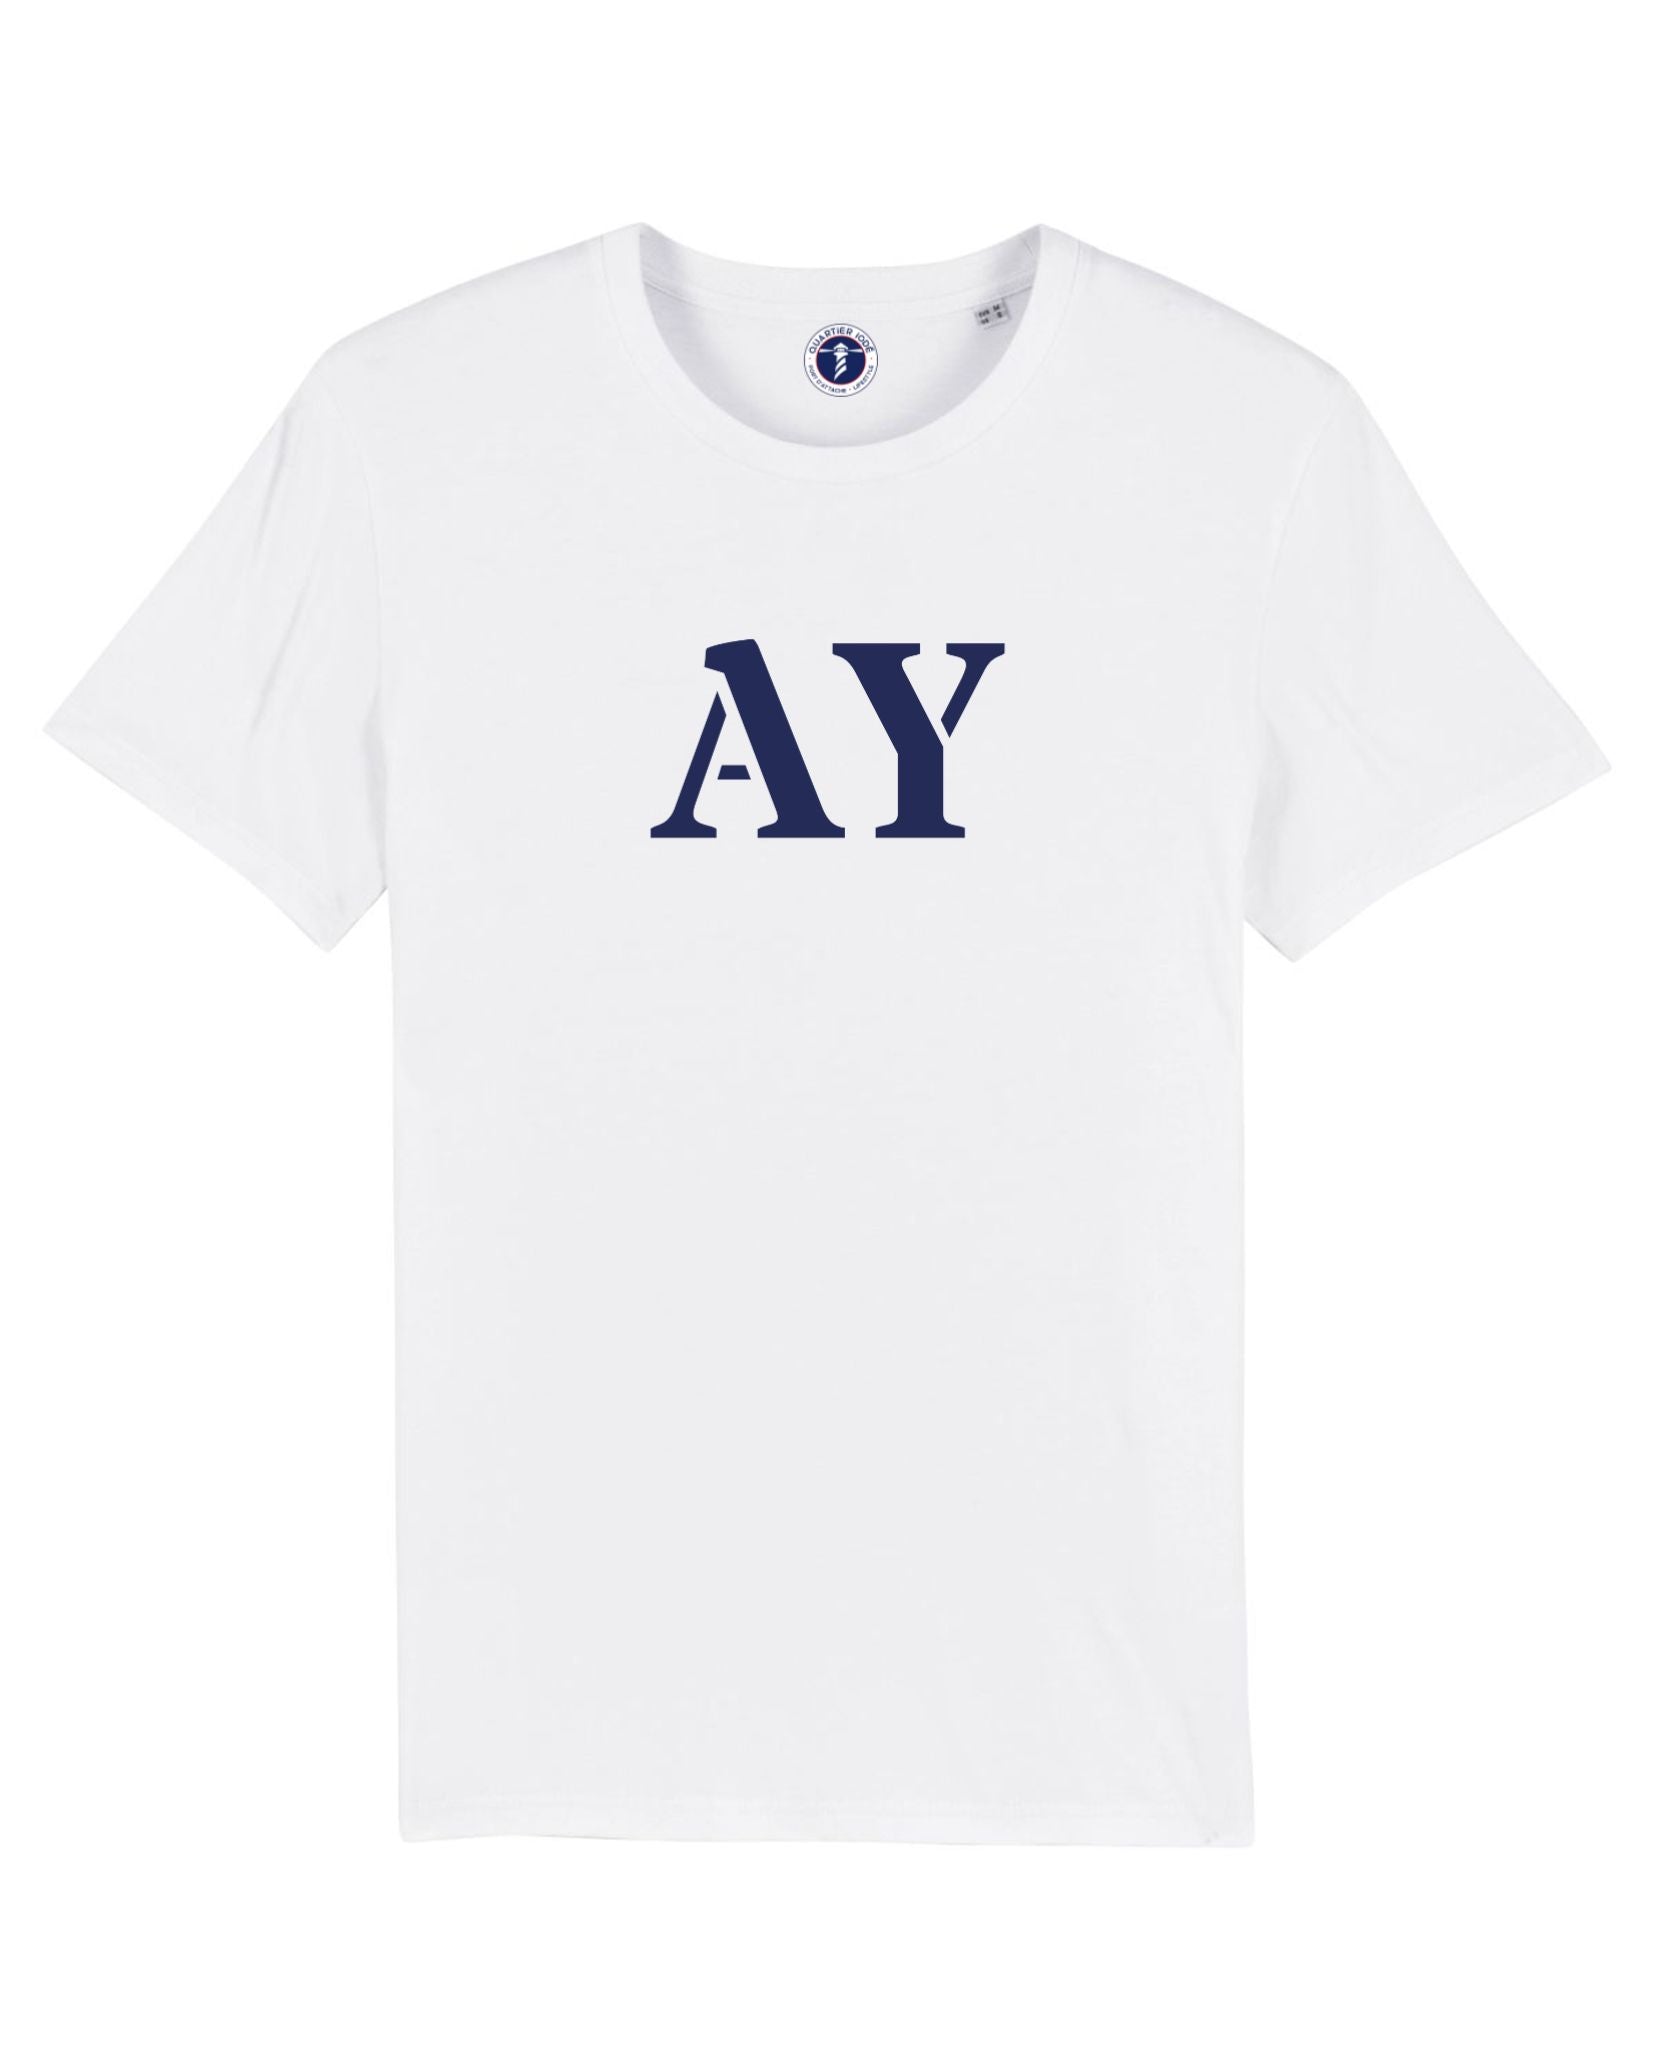 AY pour Auray, Tshirt ado et enfant blanc et bleu de la marque de vêtements bretons Quartier Iodé.